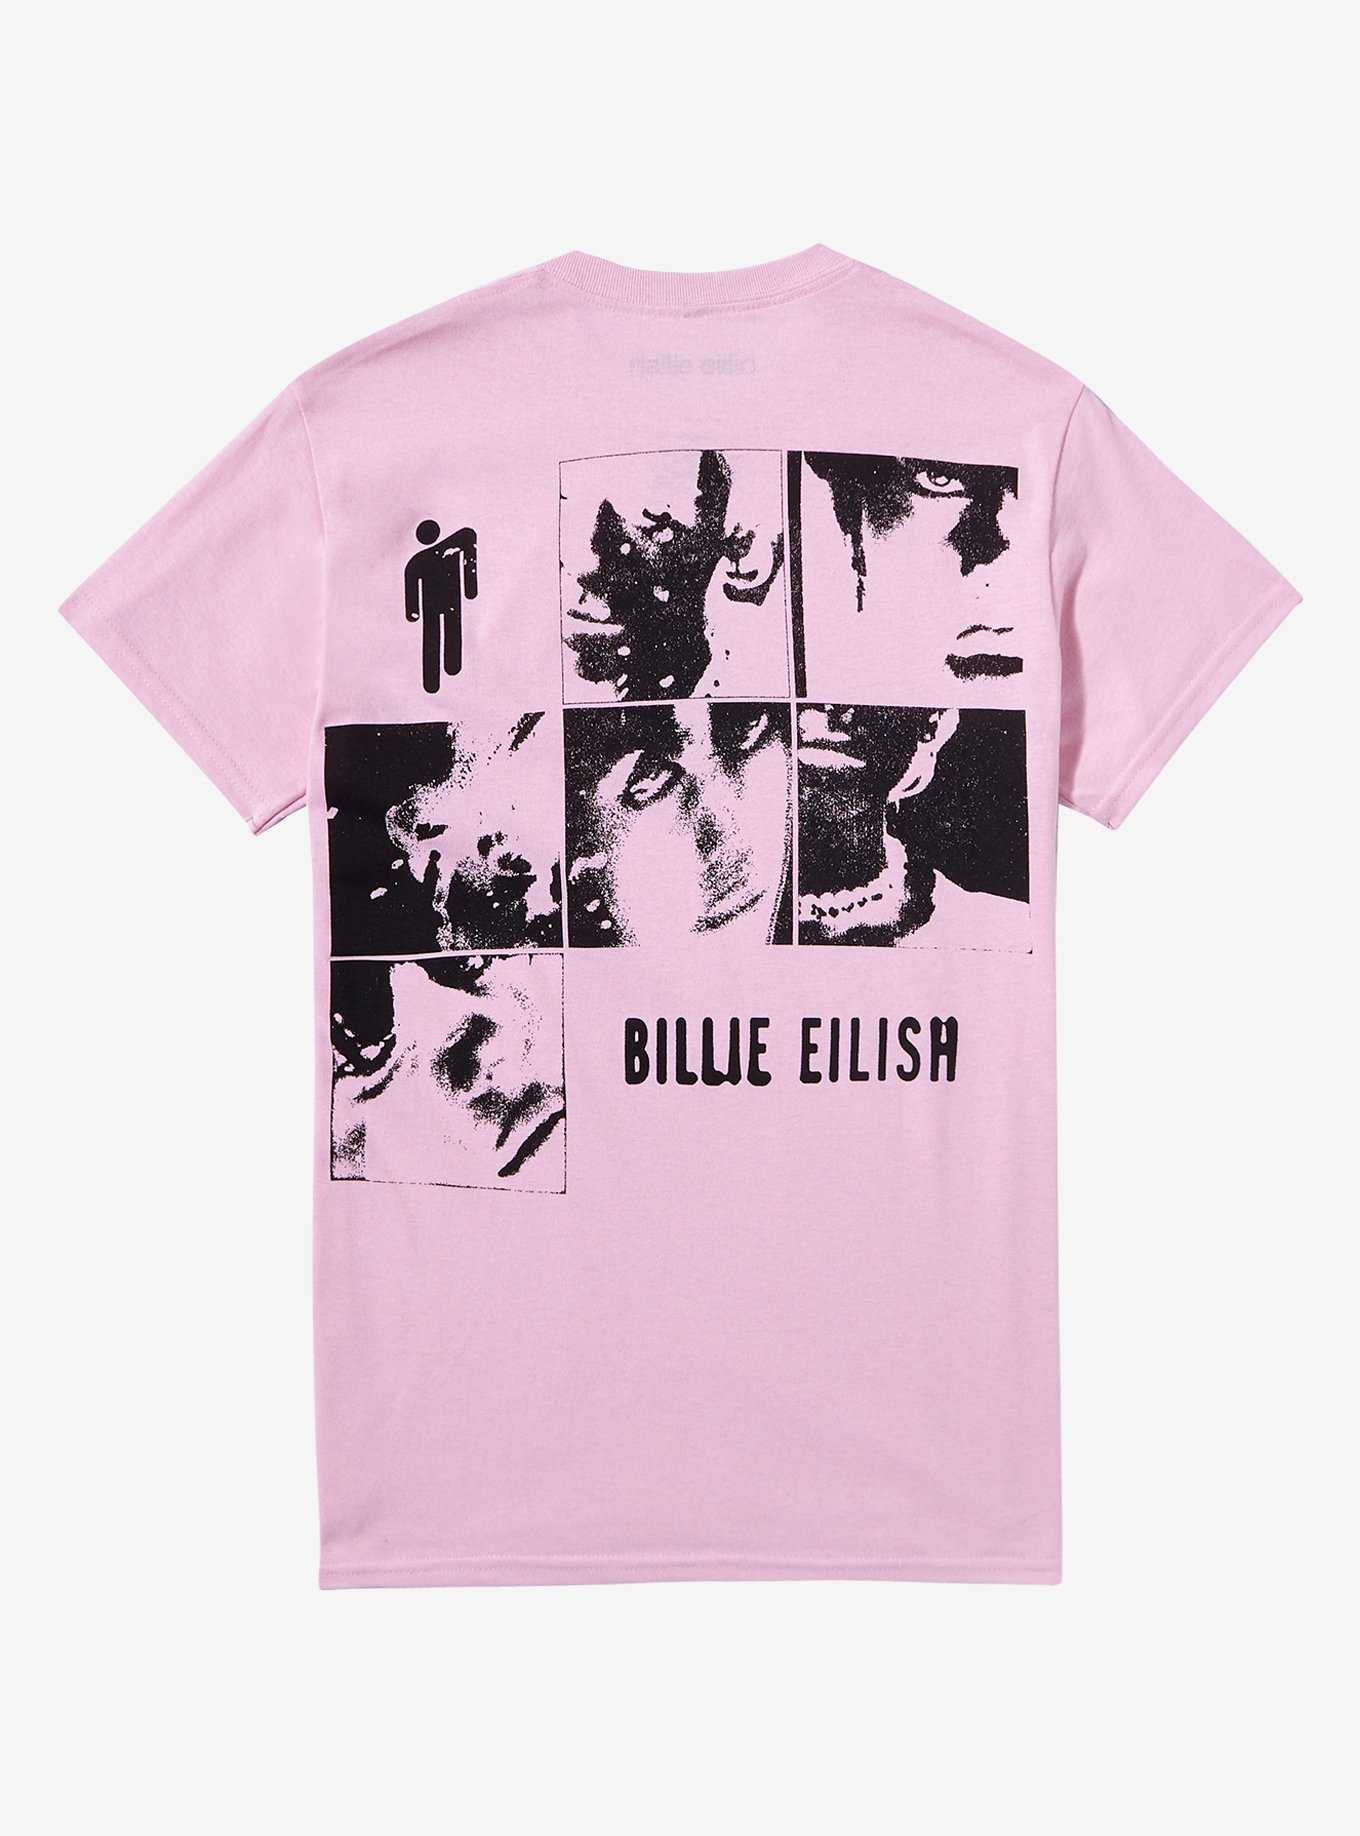 Billie Eilish Photo Grid Boyfriend Fit Girls T-Shirt, , hi-res